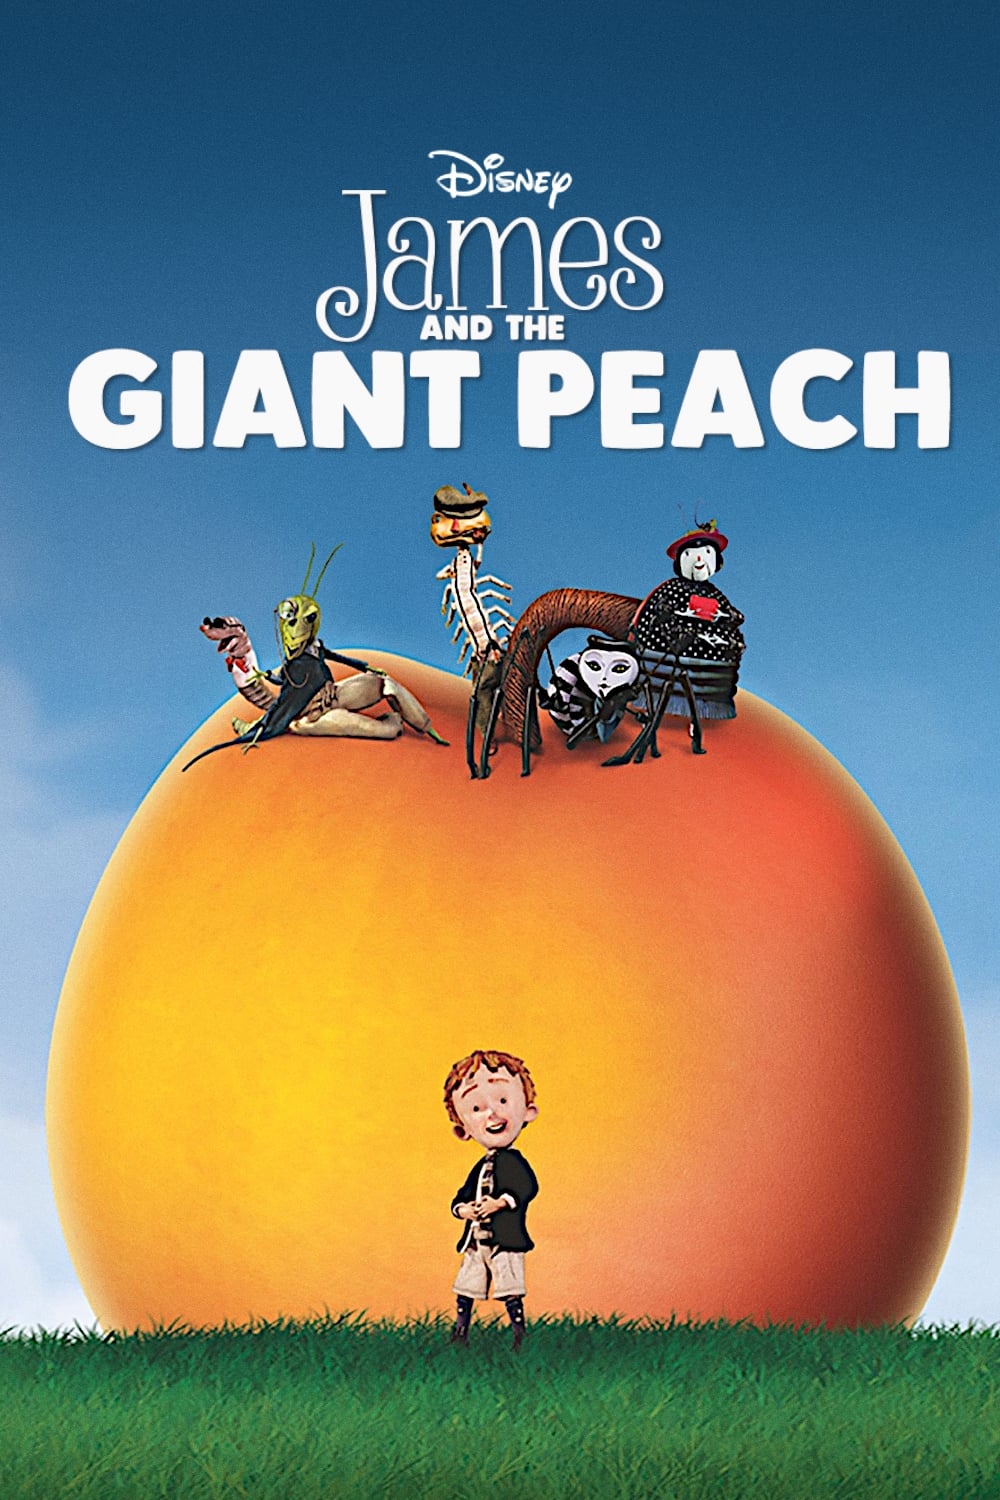 James und der Riesenpfirsich (1996)